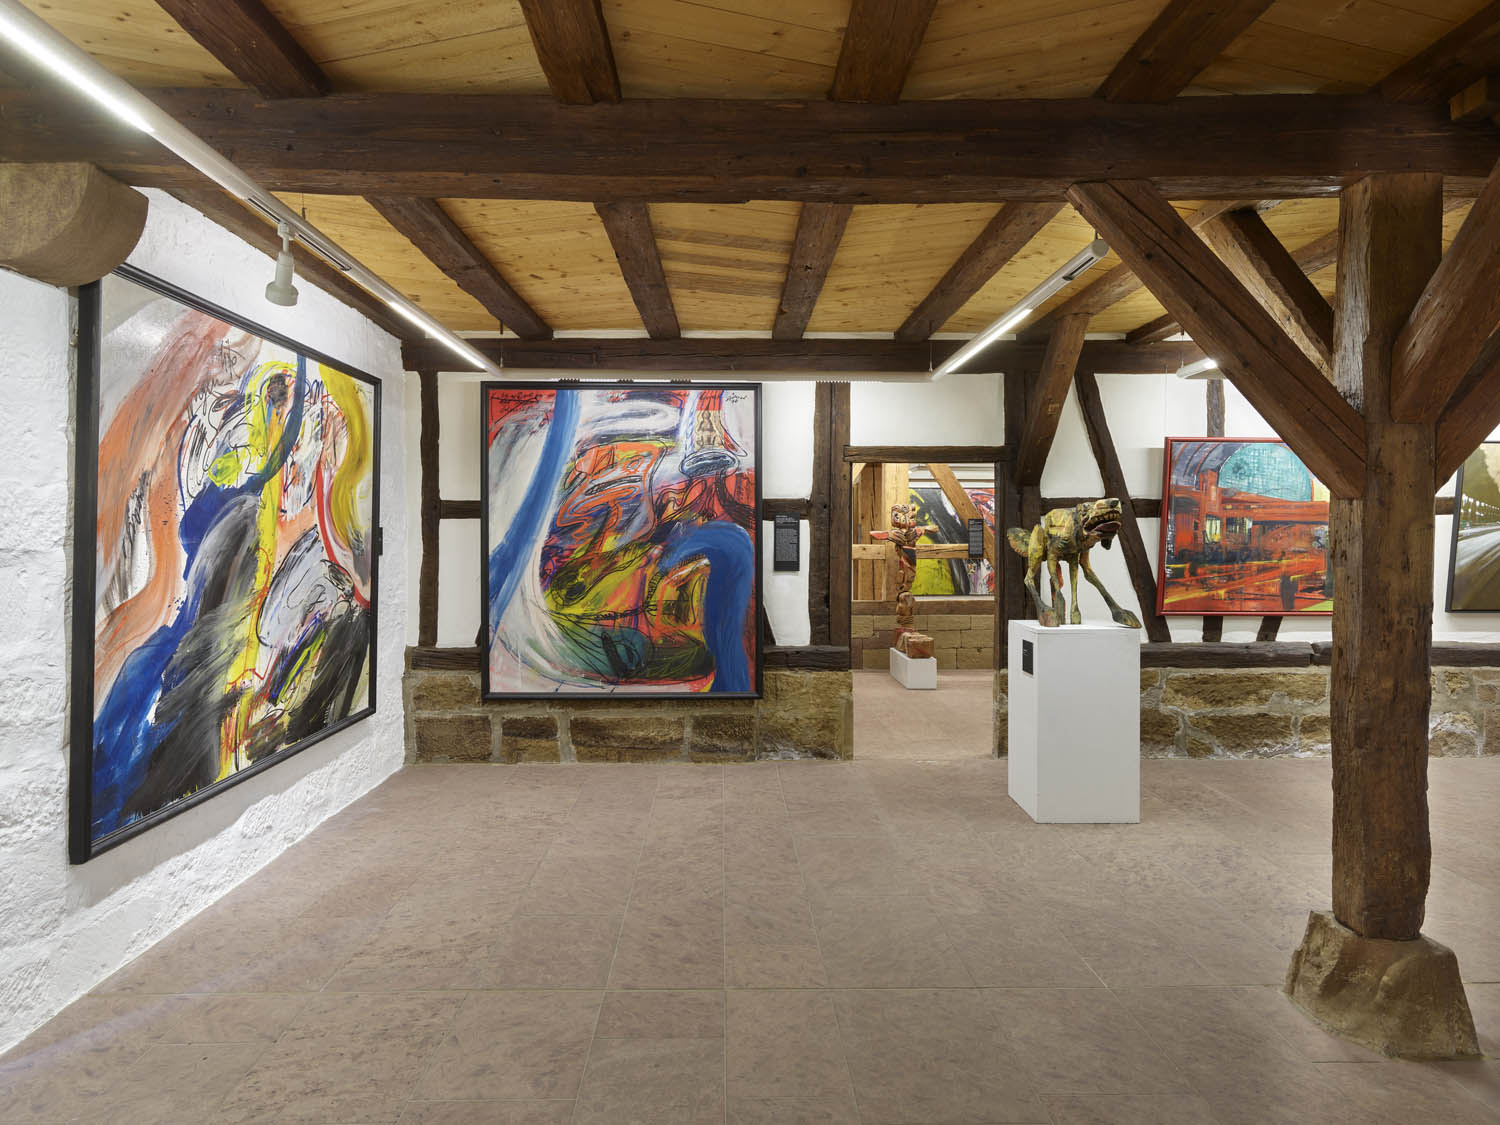 Perspektivischer Blick in ein Museum, mit großformatigen neoexpressionistischen Gemälden und Holzskulpturen